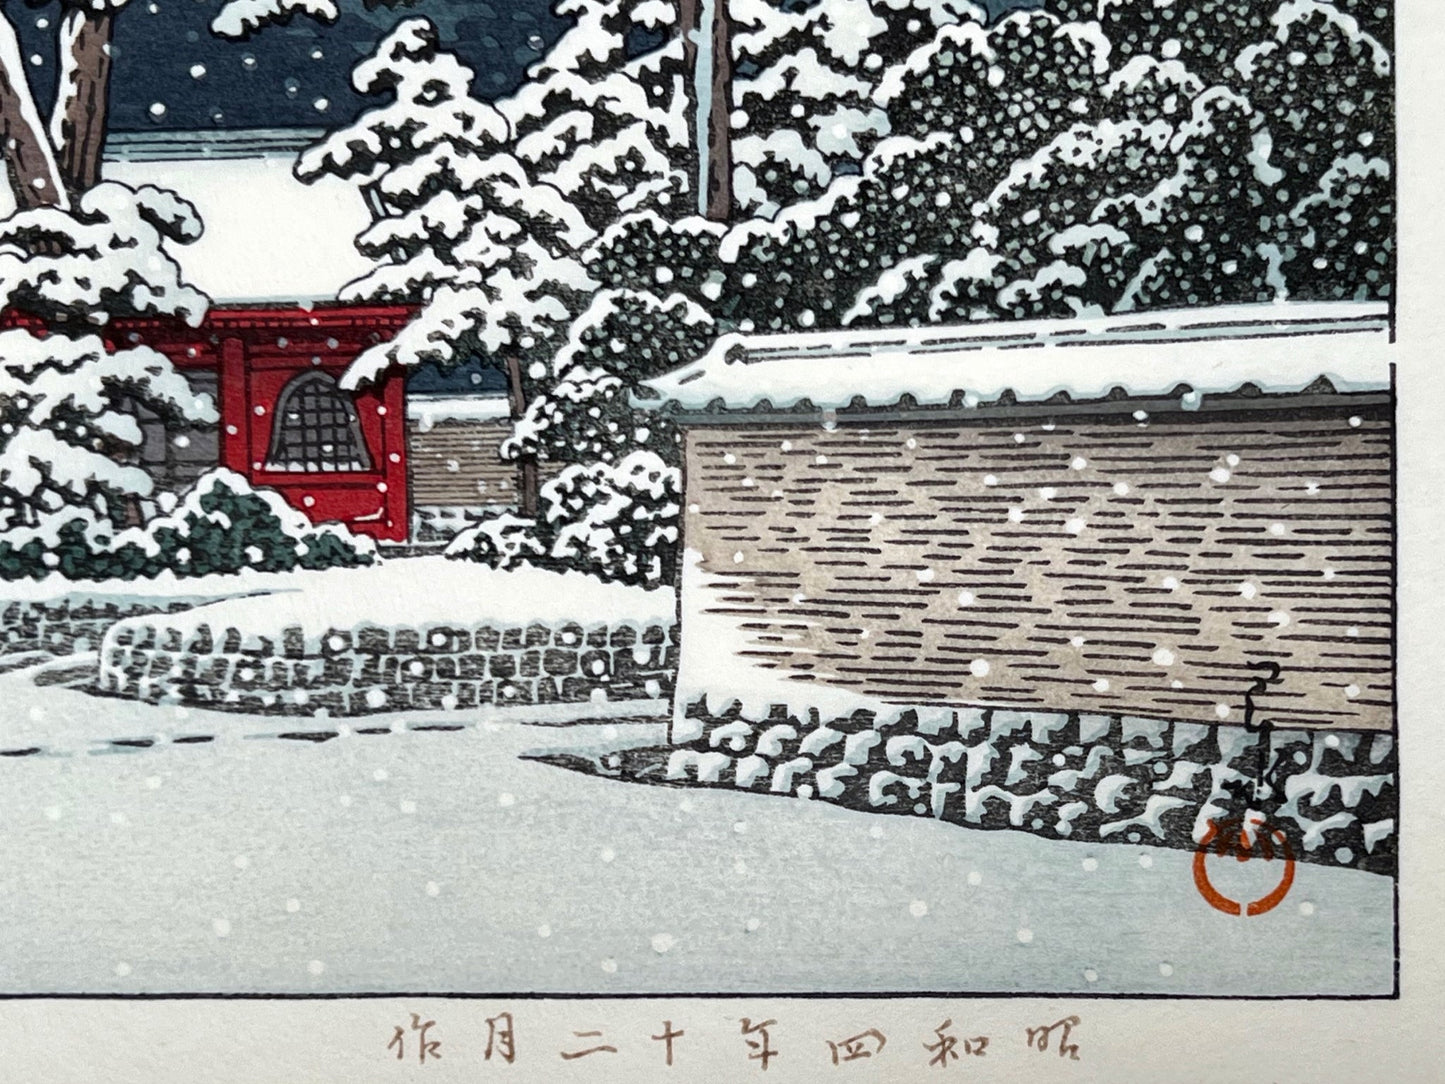 estampe japonaise la neige tombe la nuit sur le temple rouge, un promeneur sous un parapluie avec son chien, signature de l'artiste